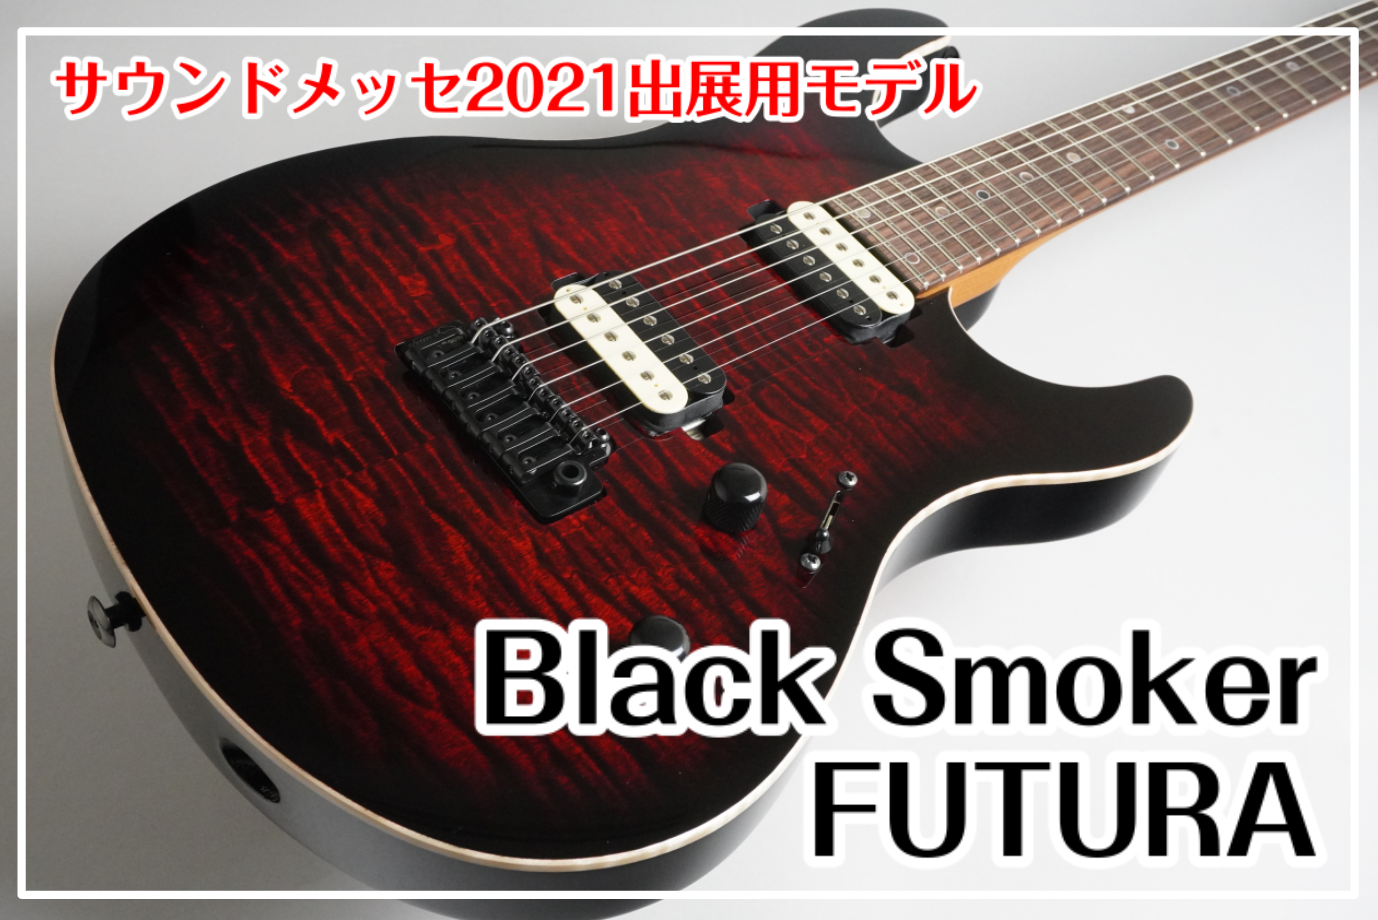 【サウンドメッセ2021】Black Smoker FUTURA-S HH サウンドメッセin大阪2021出展用モデル